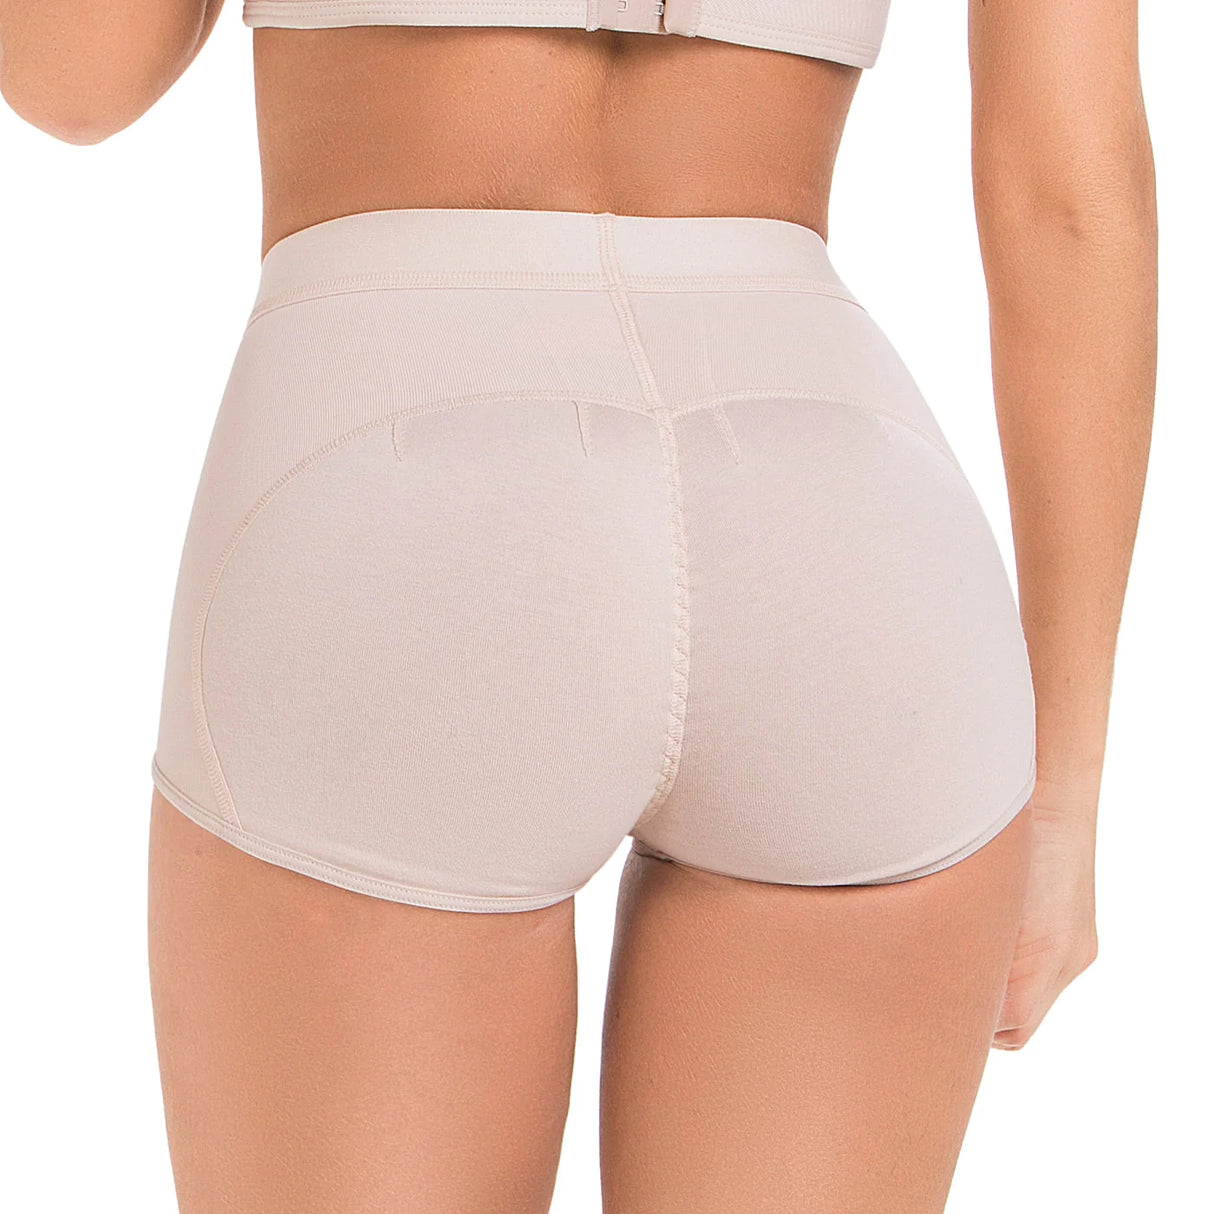 Colombian Panty Butt Lifter  Colombian Girdles Sale – Fajas